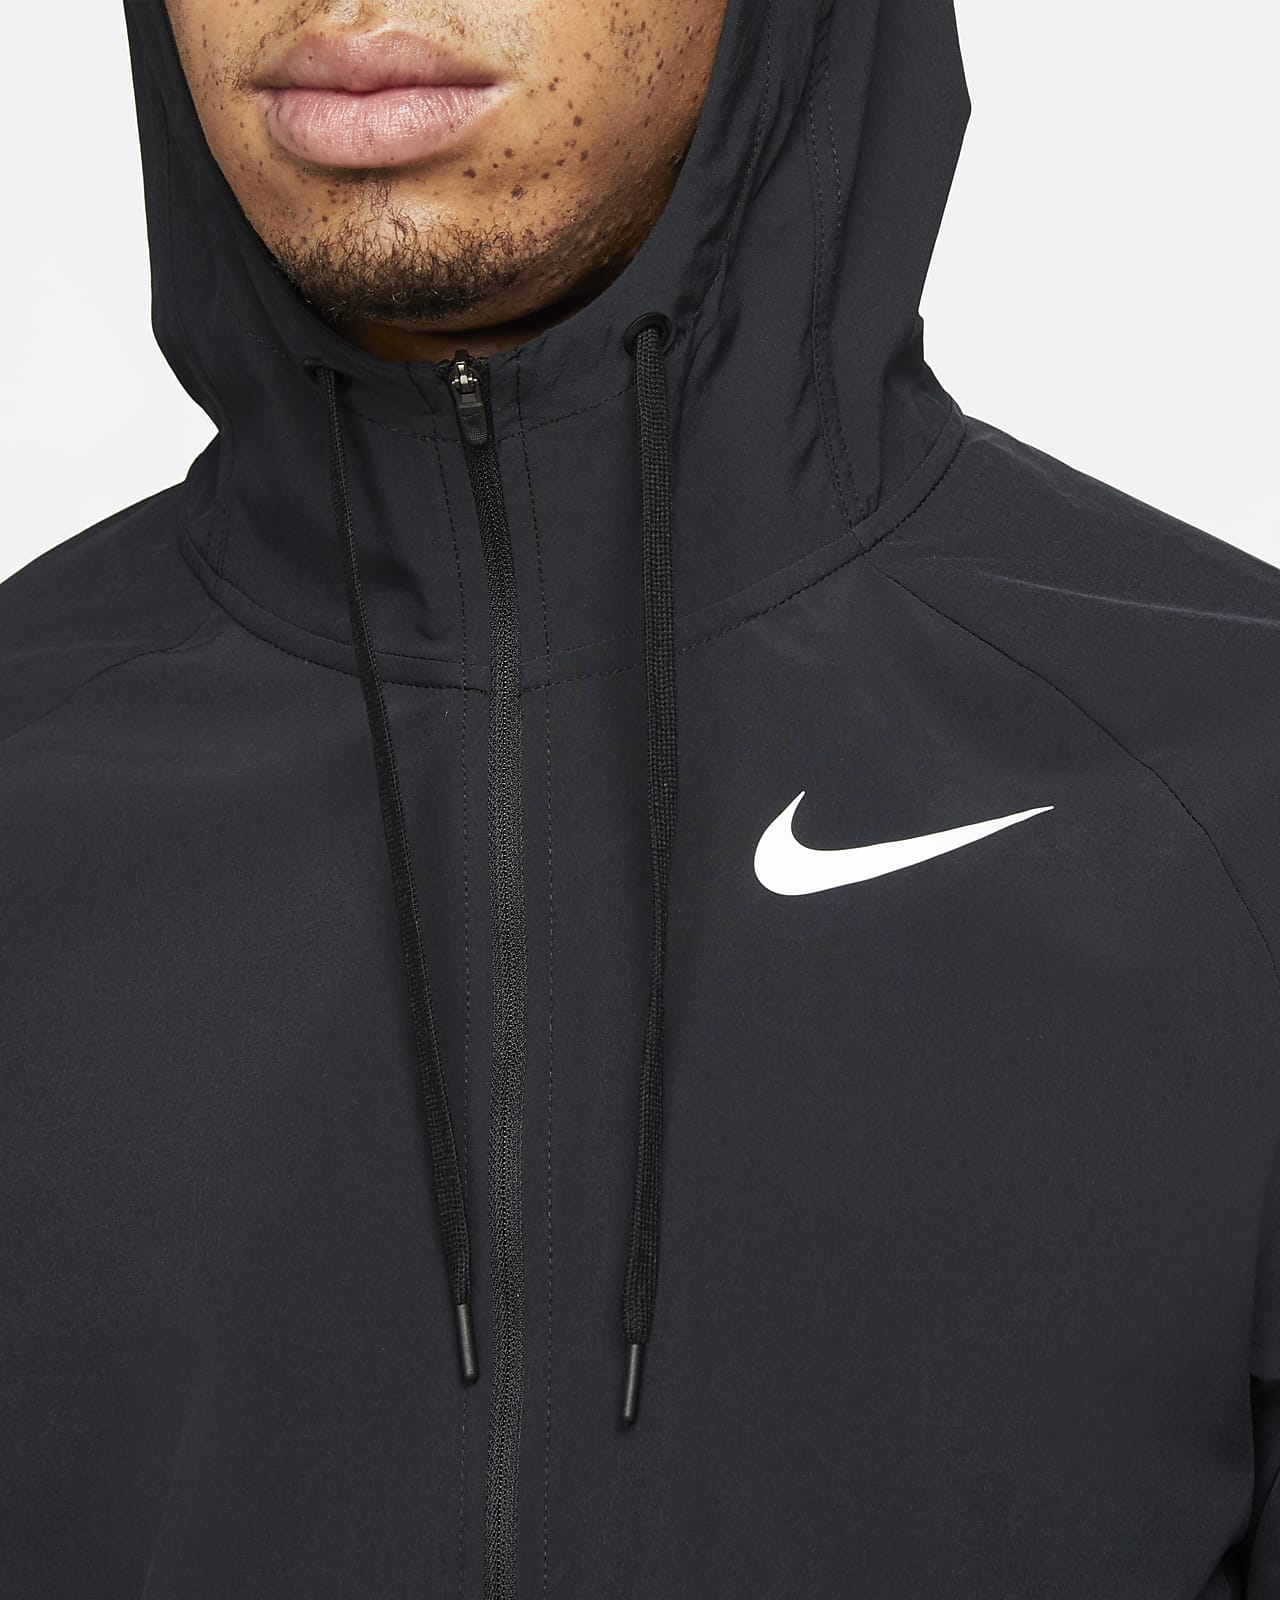 Veste à capuche Nike Dri-FIT Homme